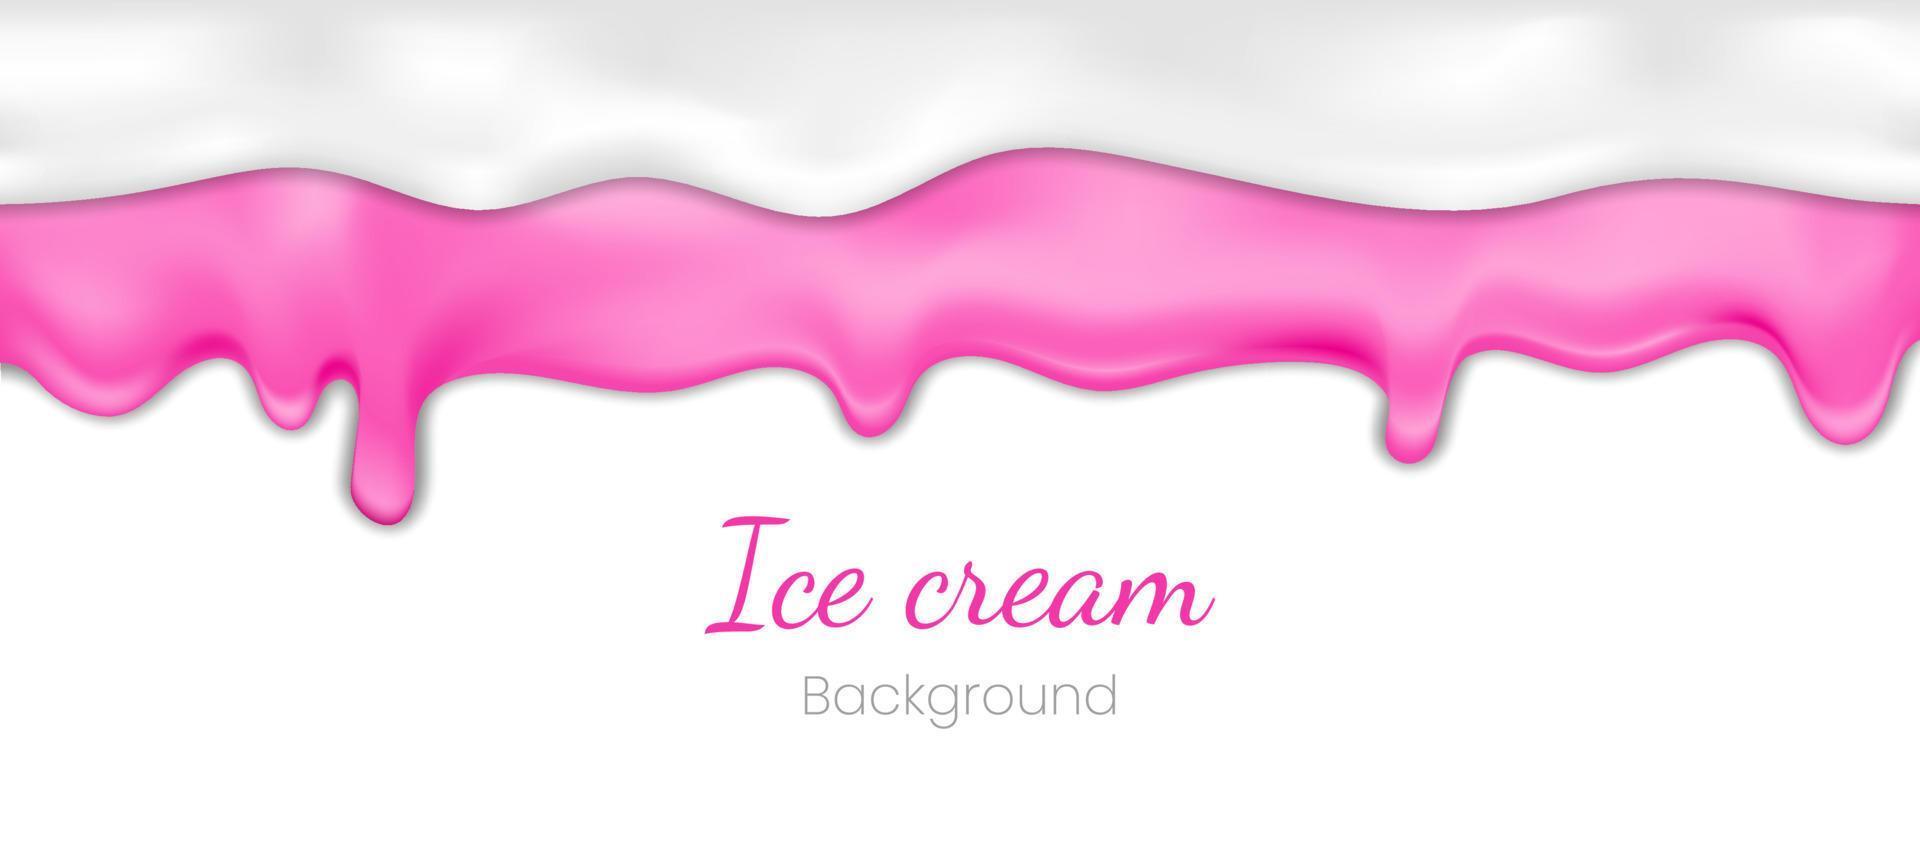 helado de goteo realista o yogur congelado sobre fondo blanco. salpicaduras de líquido dulce de jarabe, borde de crema brillante, ilustración de vector 3d de textura fundida glaseado blanco y rosa derretido o gota de salsa dulce.